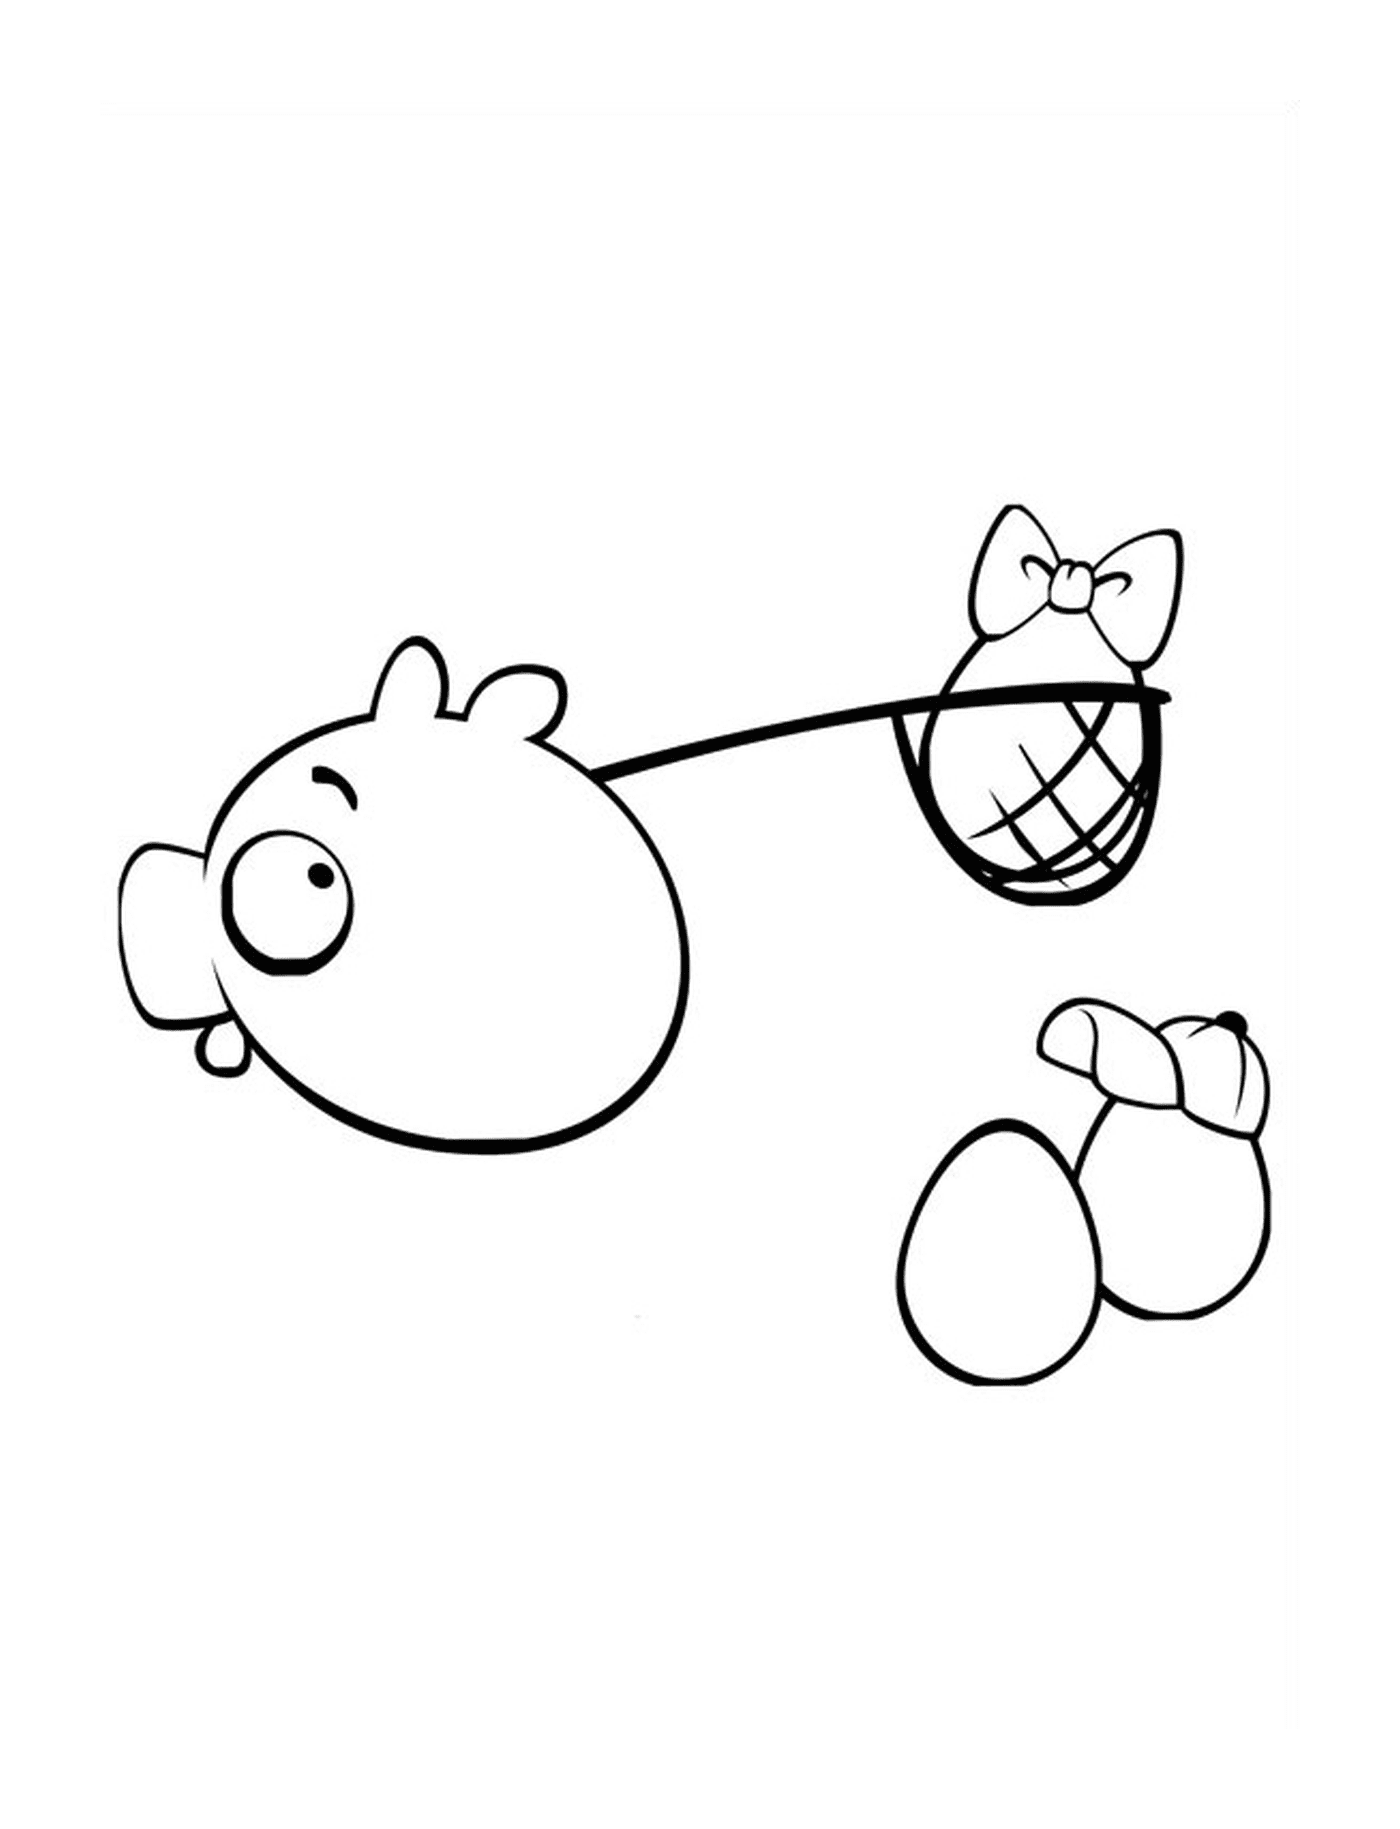  Angry Birds porco com ovo na rede 